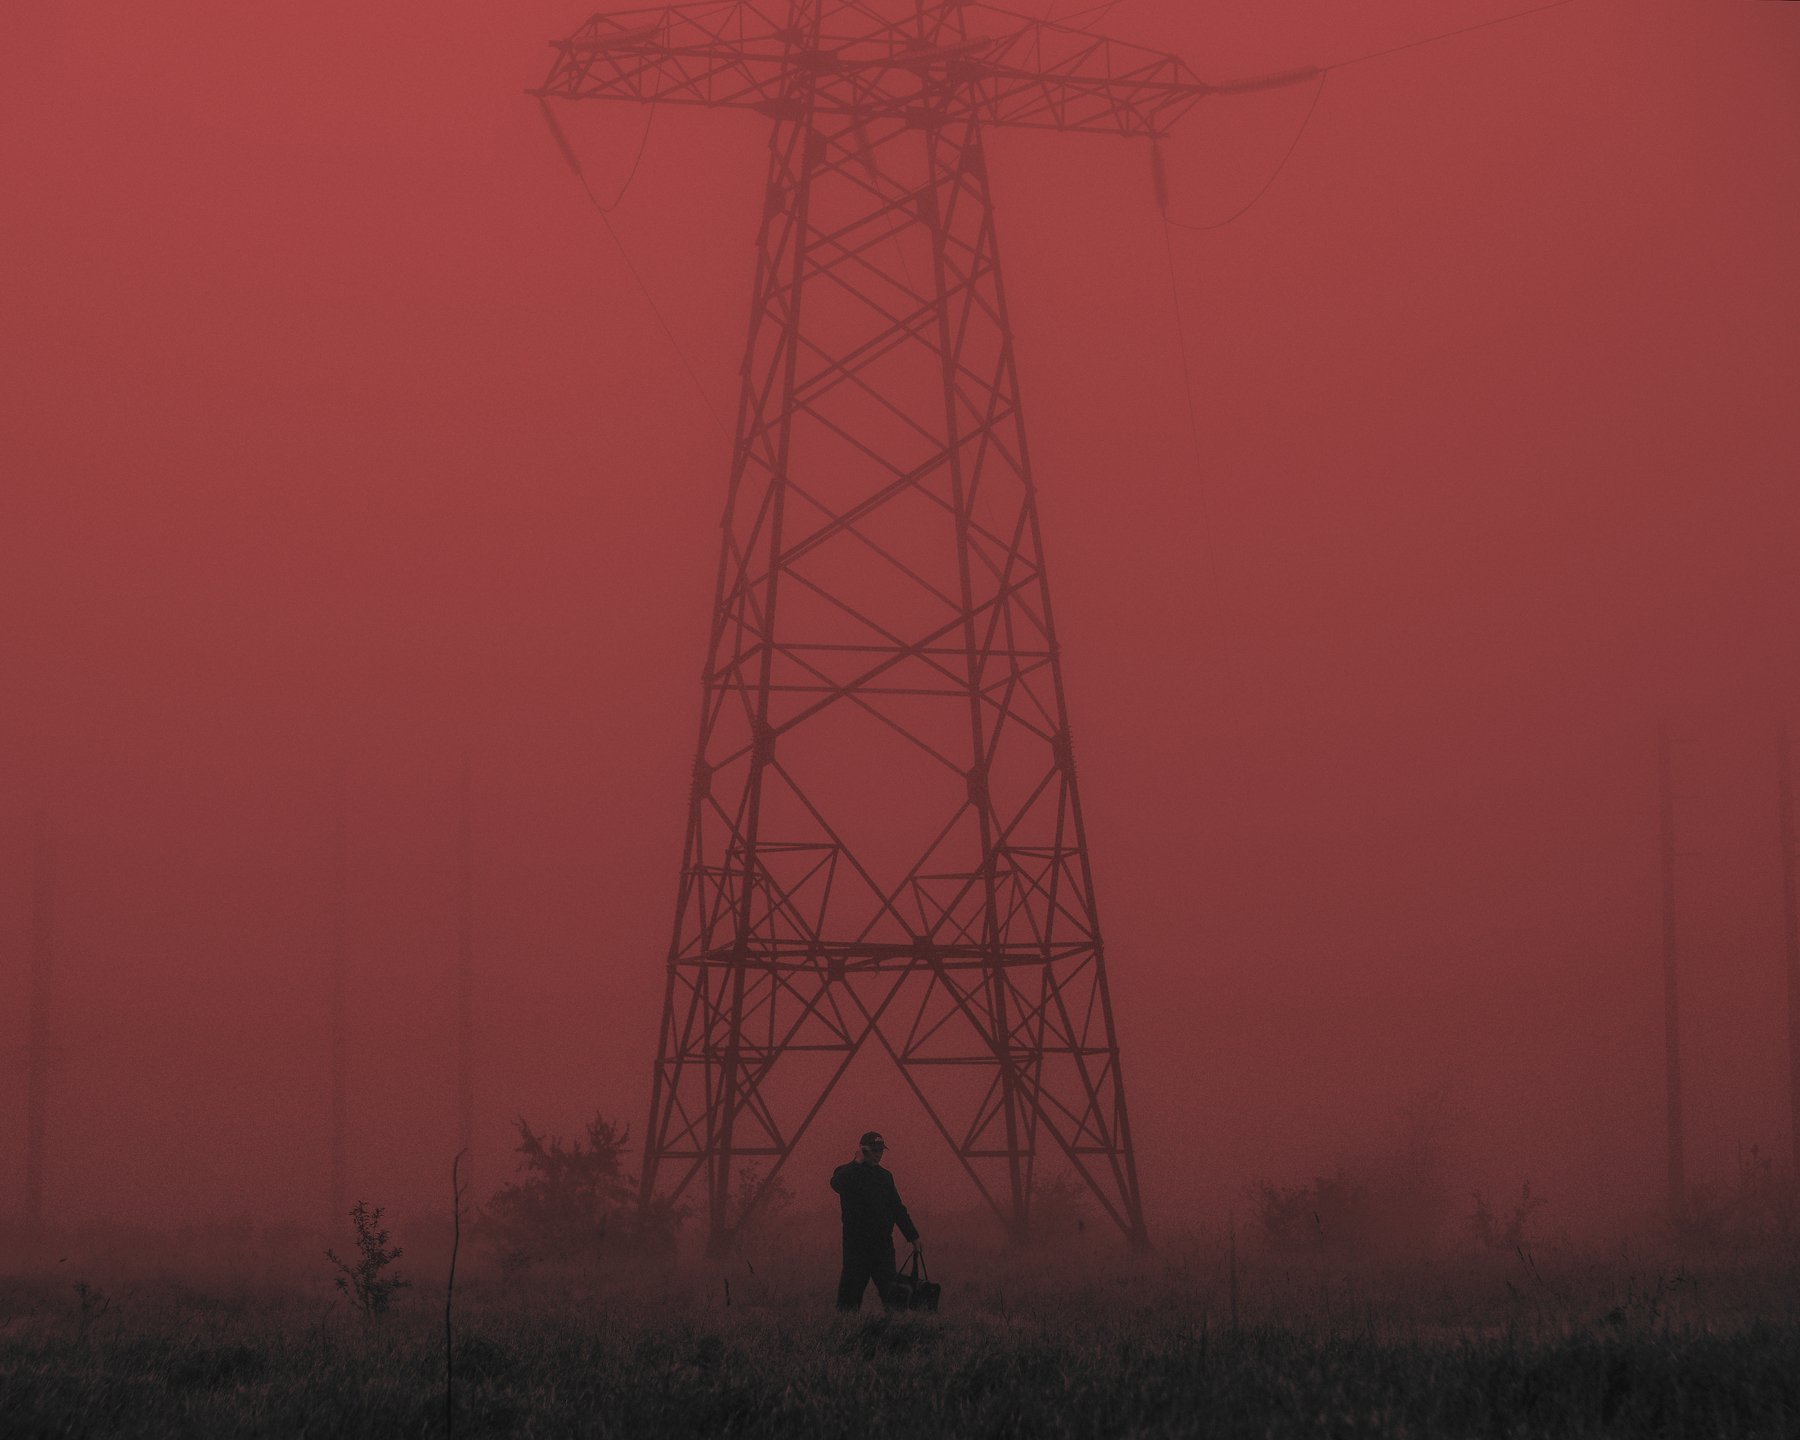 вышка, туман, человек, связь, мобильная сеть, красный, Игорь Крюков